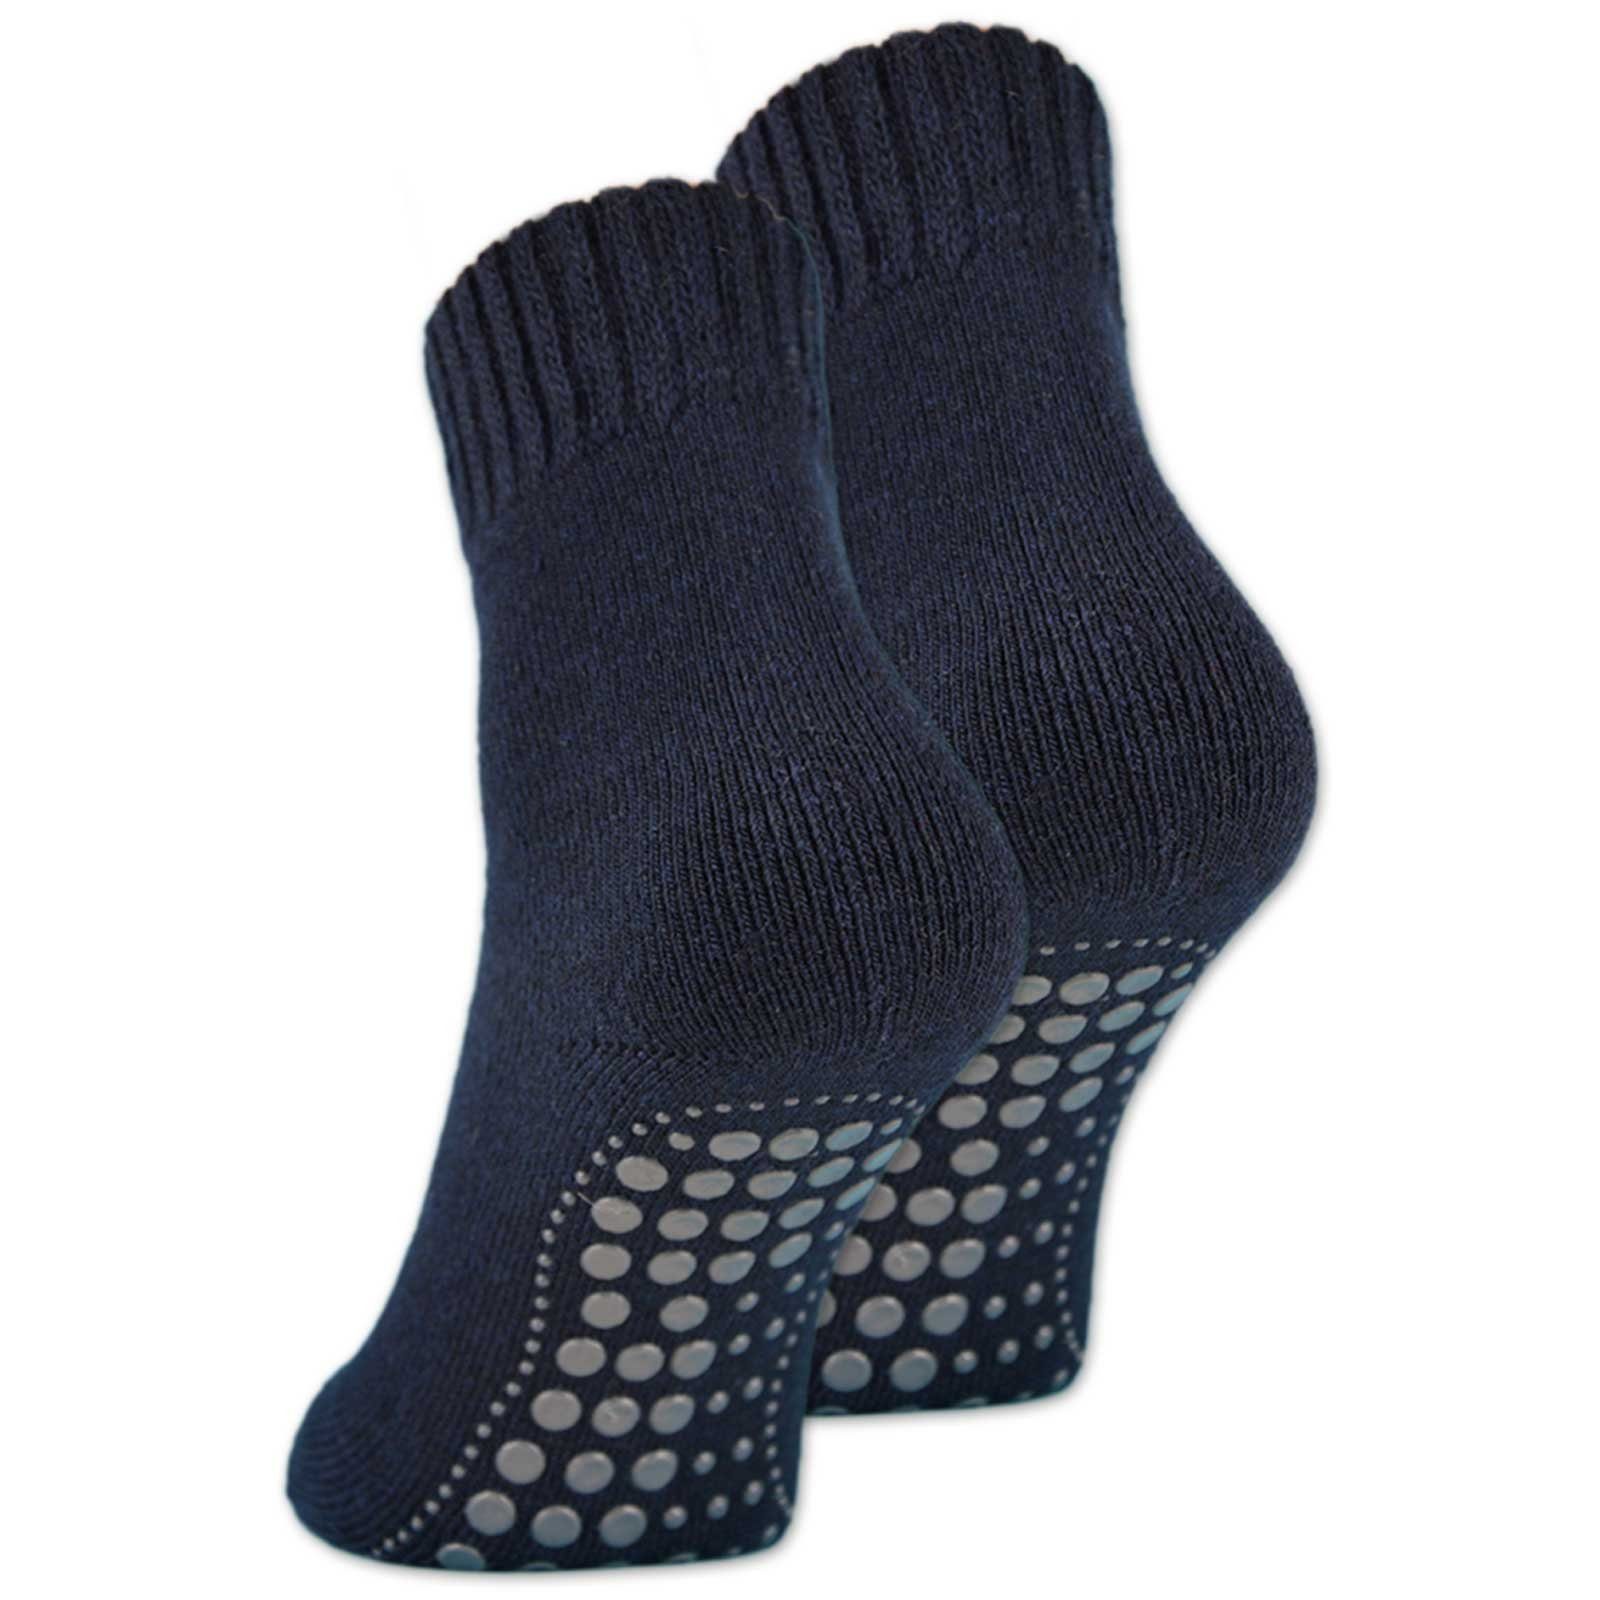 sockenkauf24 ABS-Socken 2, 4 oder 6 Paar Damen & Herren ABS Socken Anti Rutsch (Navy, 2-Paar, 43-46) Socken mit Wolle - 21463 WP